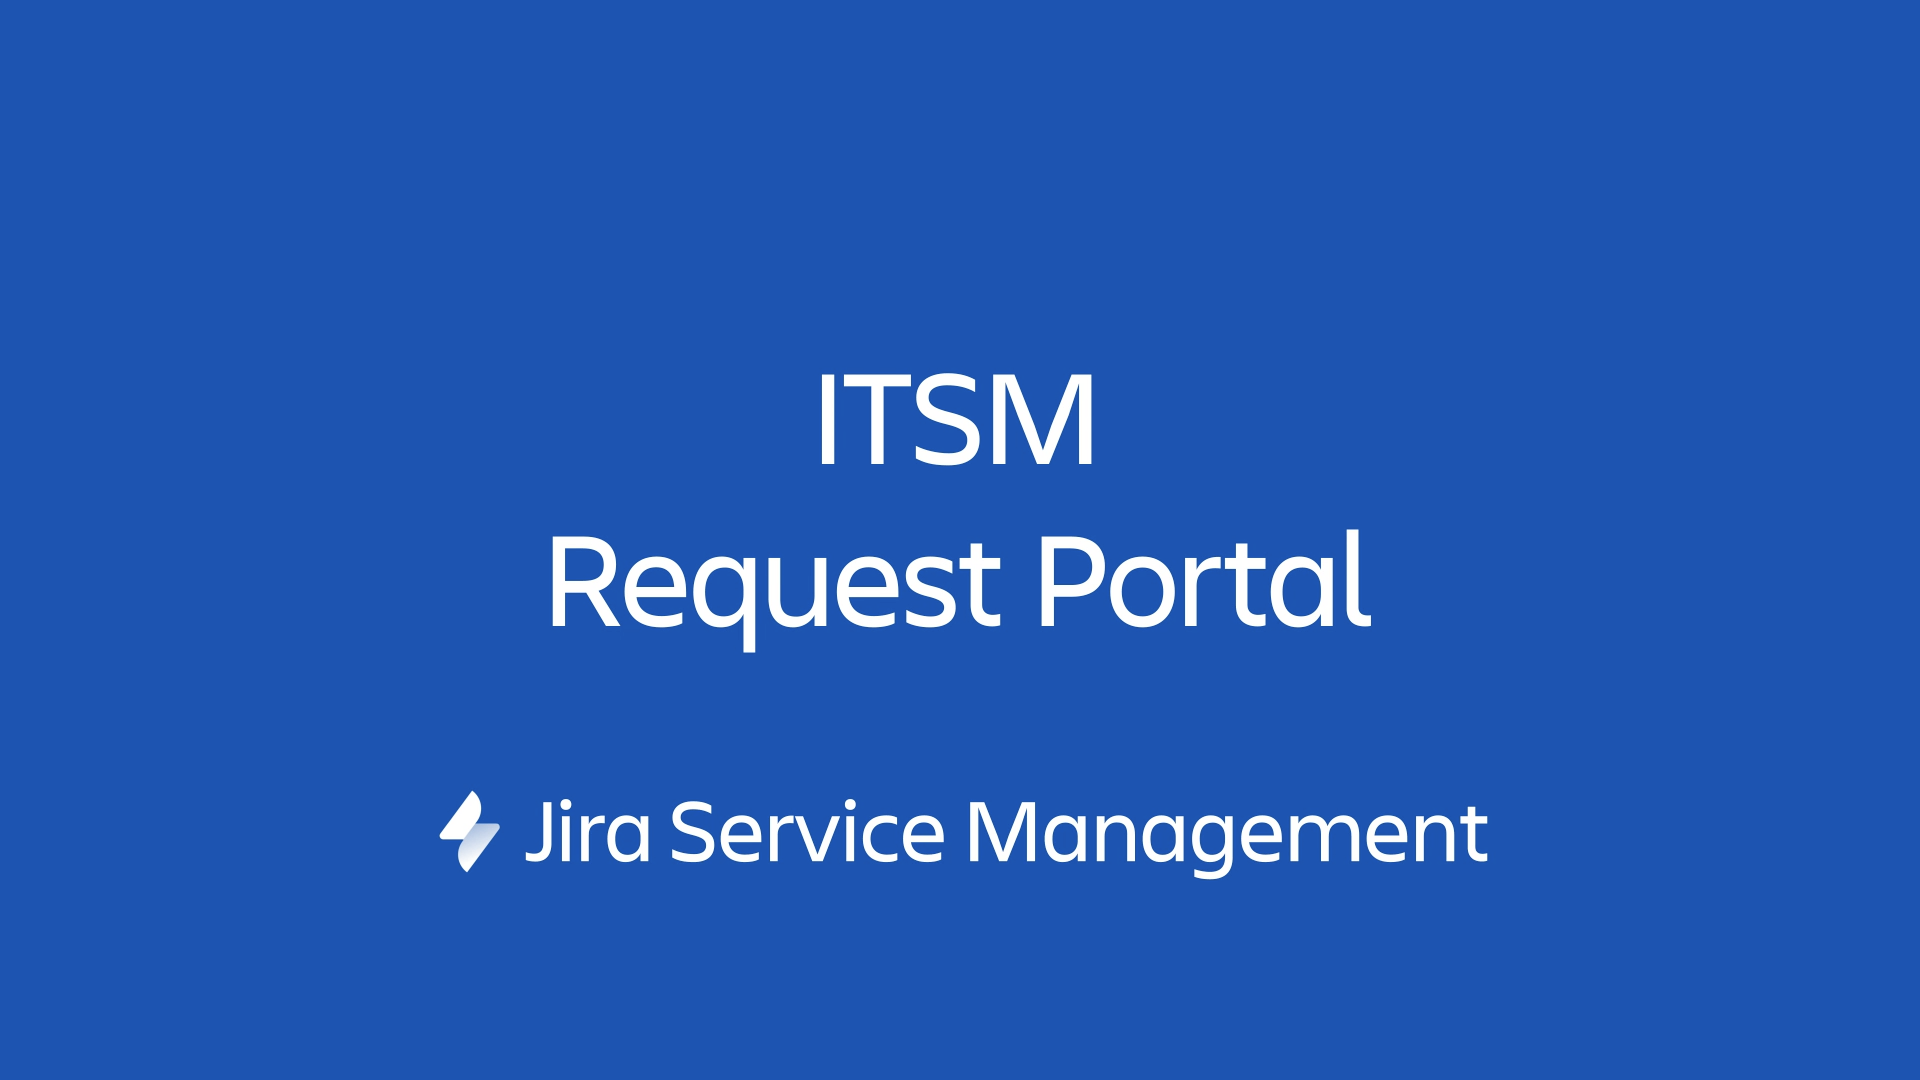 Портал запросов ITSM в Jira Service Management